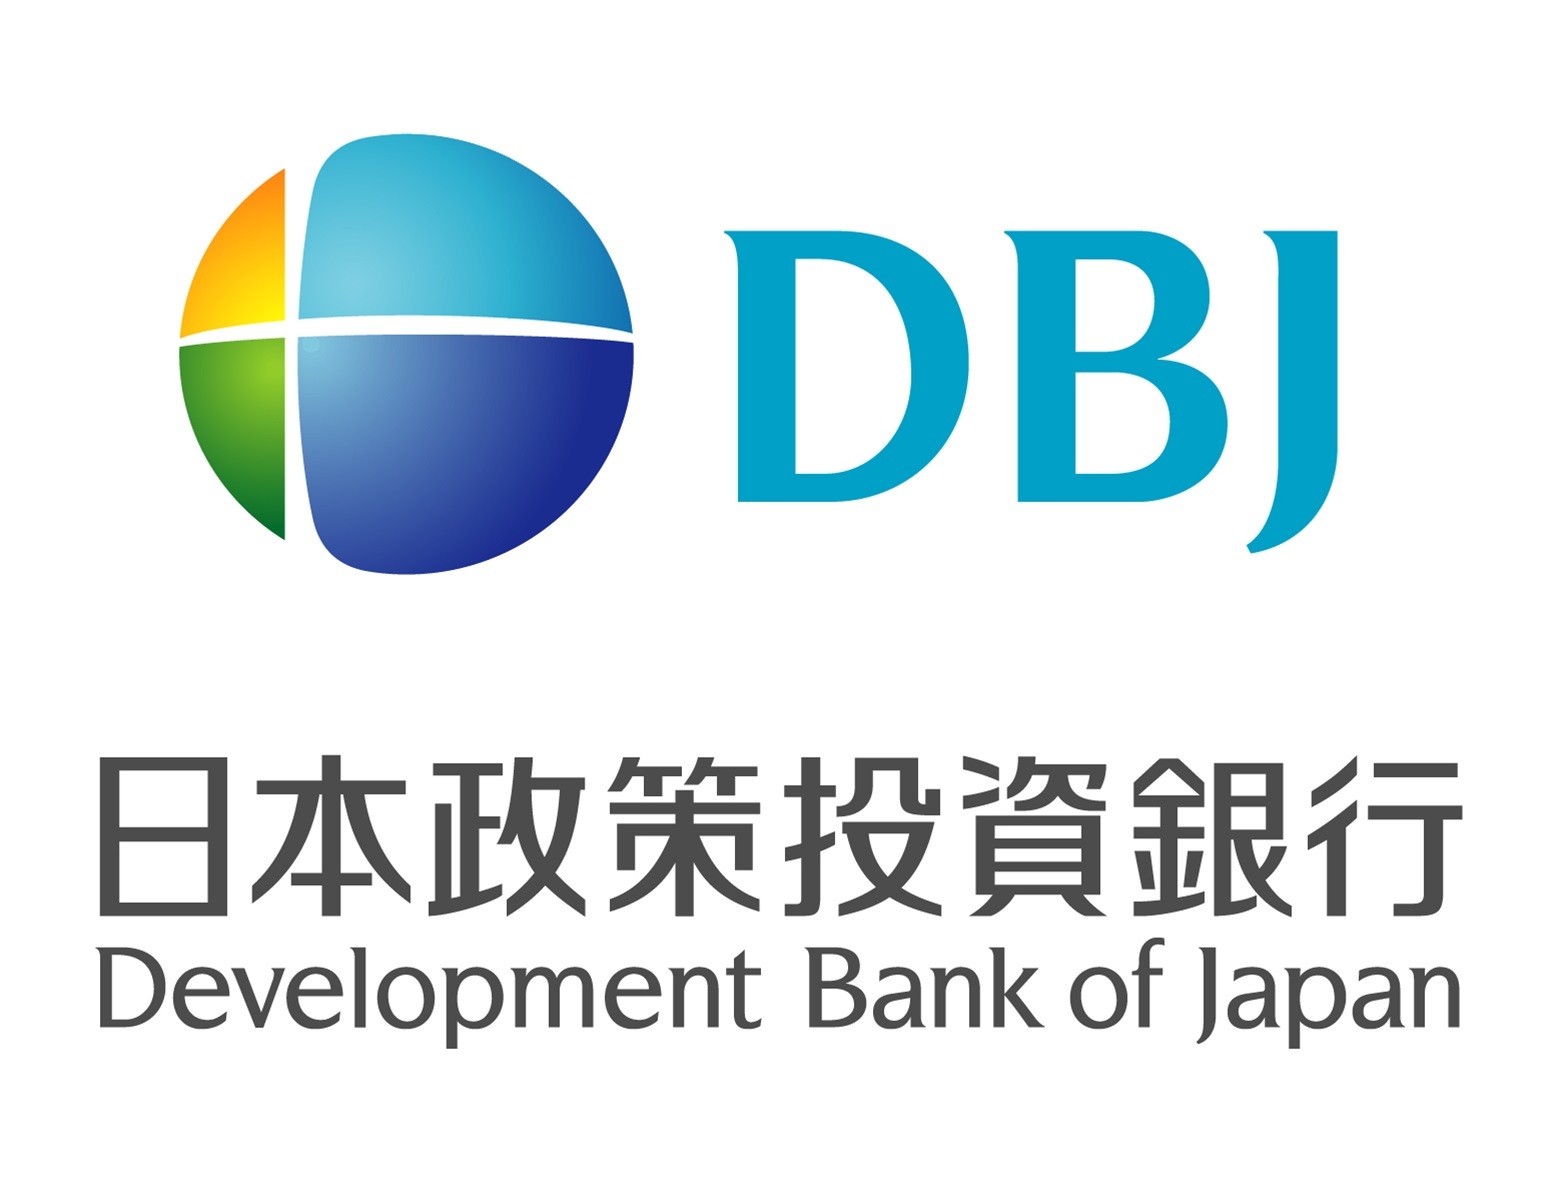 株式会社日本政策投資銀行（大分事務所）